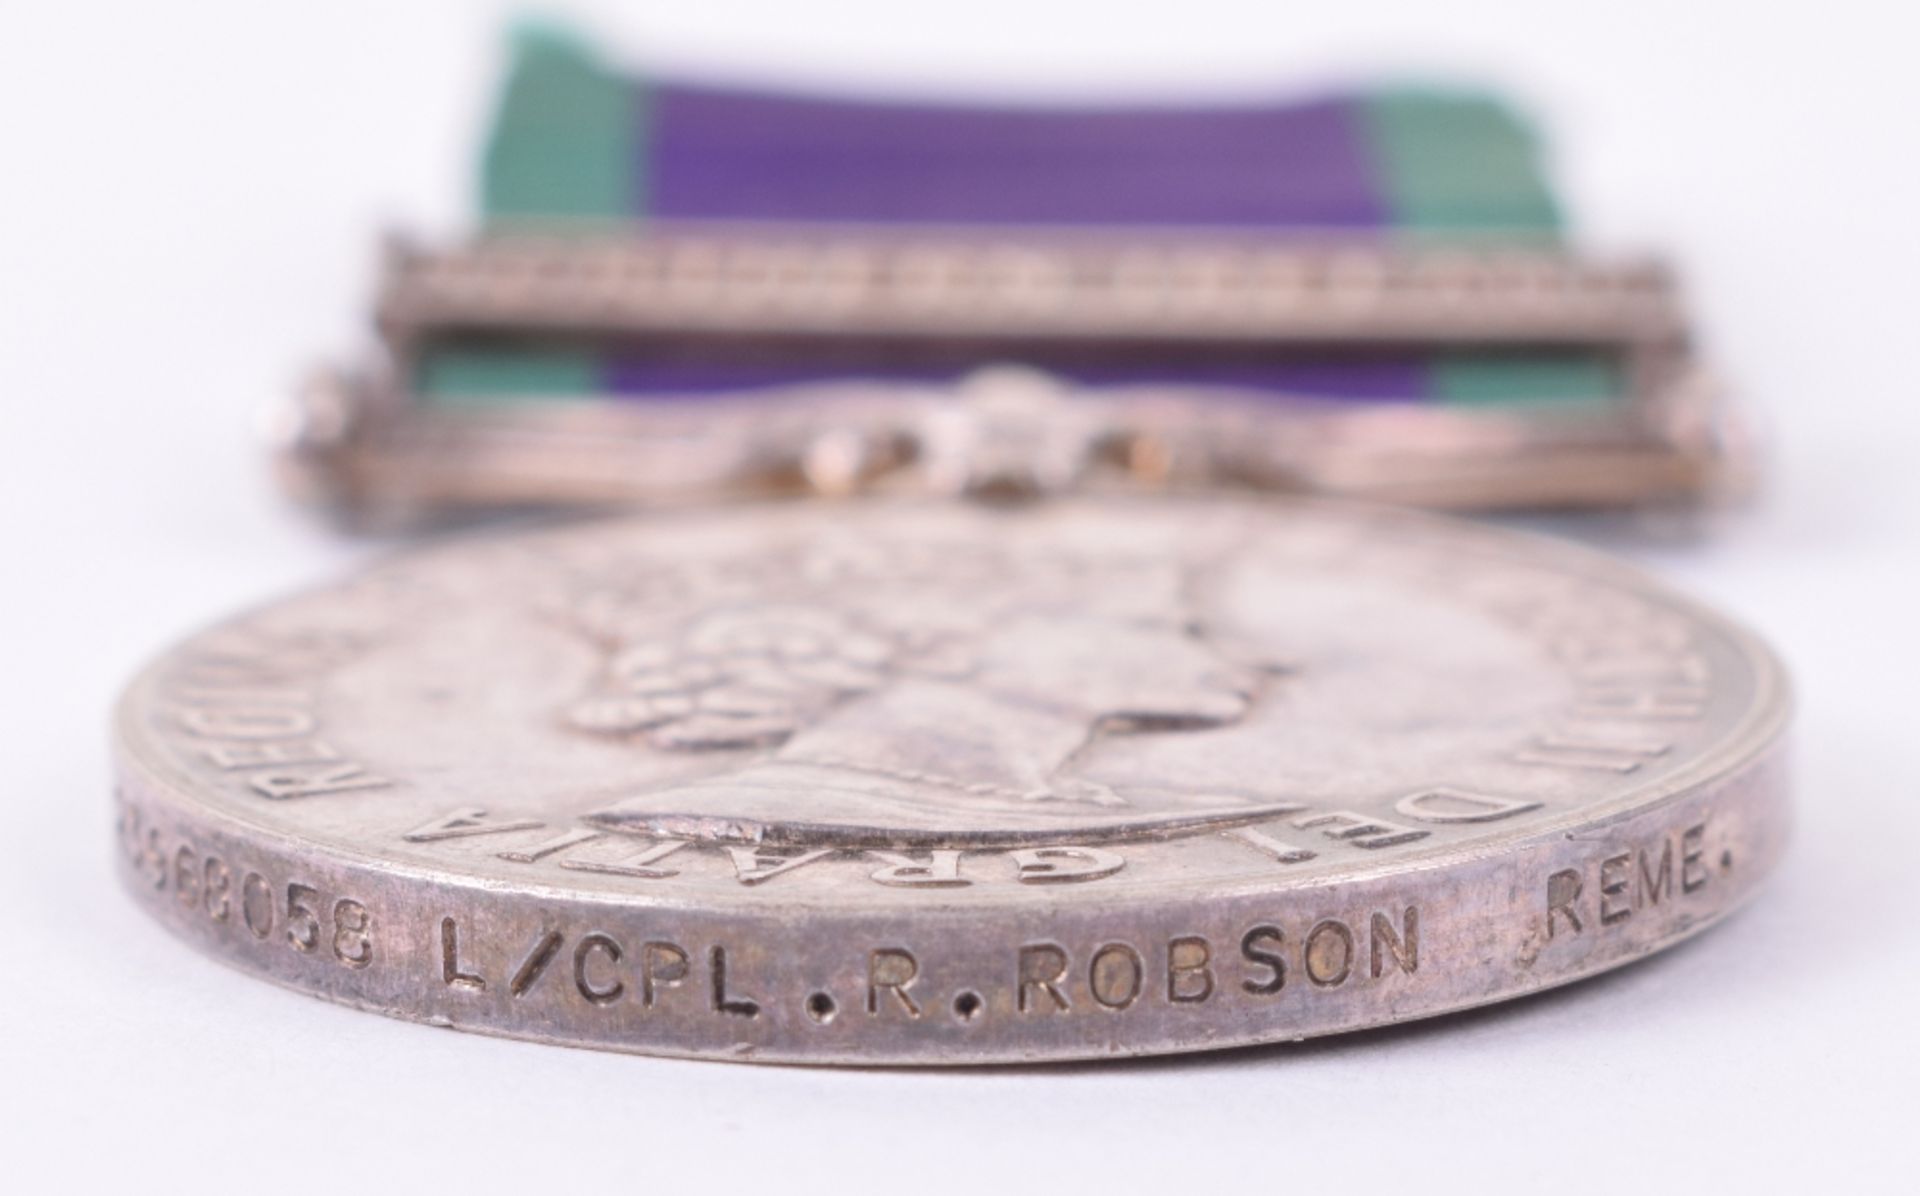 Elizabeth II General Service Medal (1962) Royal Electrical & Mechanical Engineers - Image 2 of 3